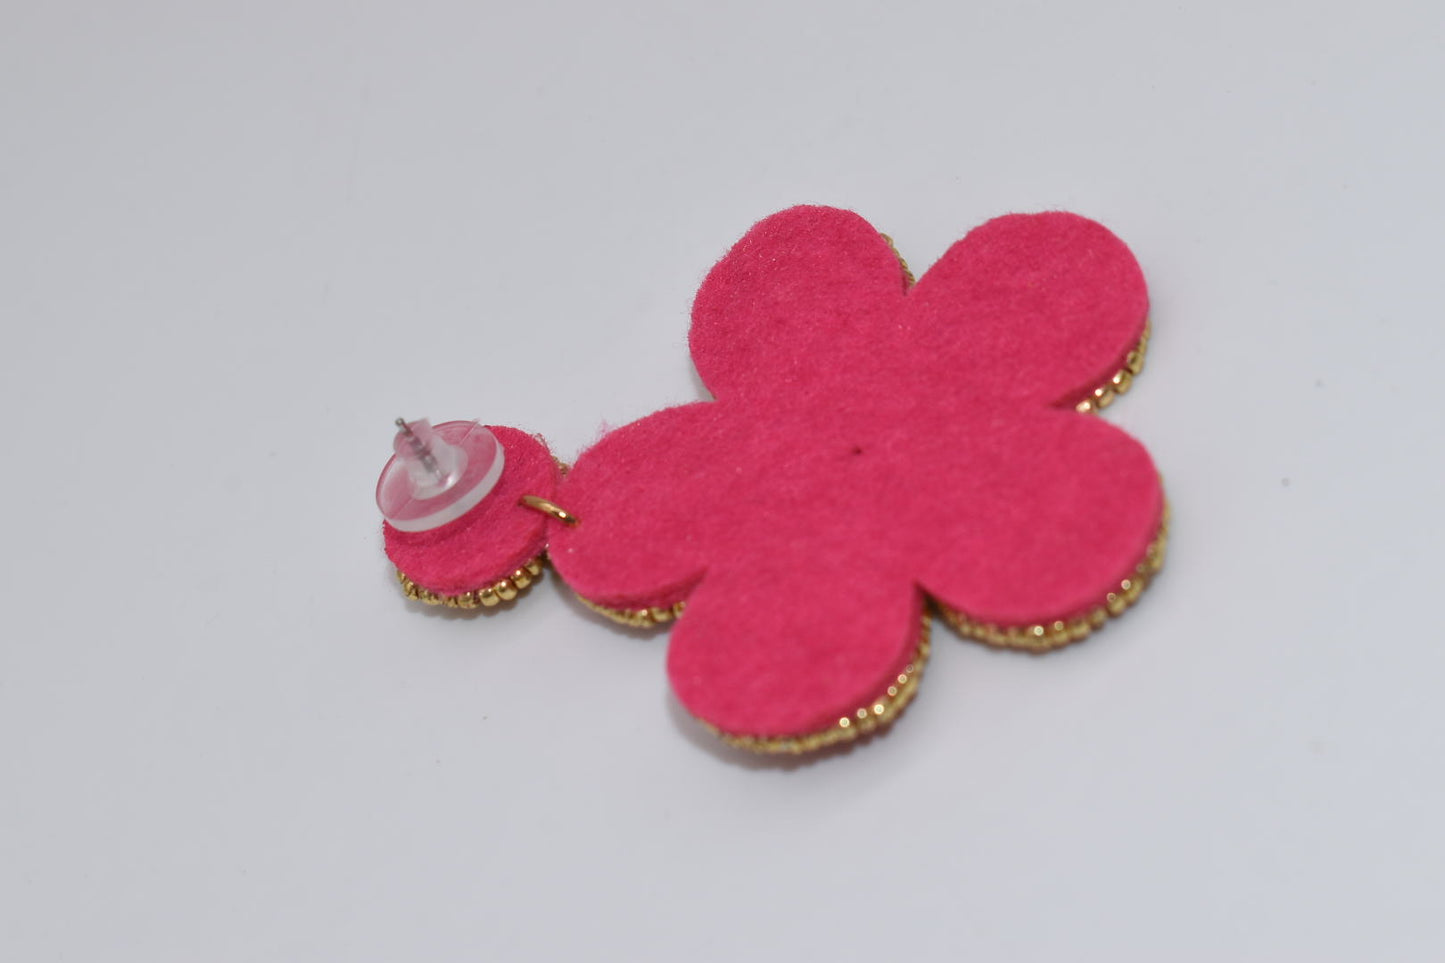 Statement Earrings: "Pink Petal Power" Beaded Drop Earrings